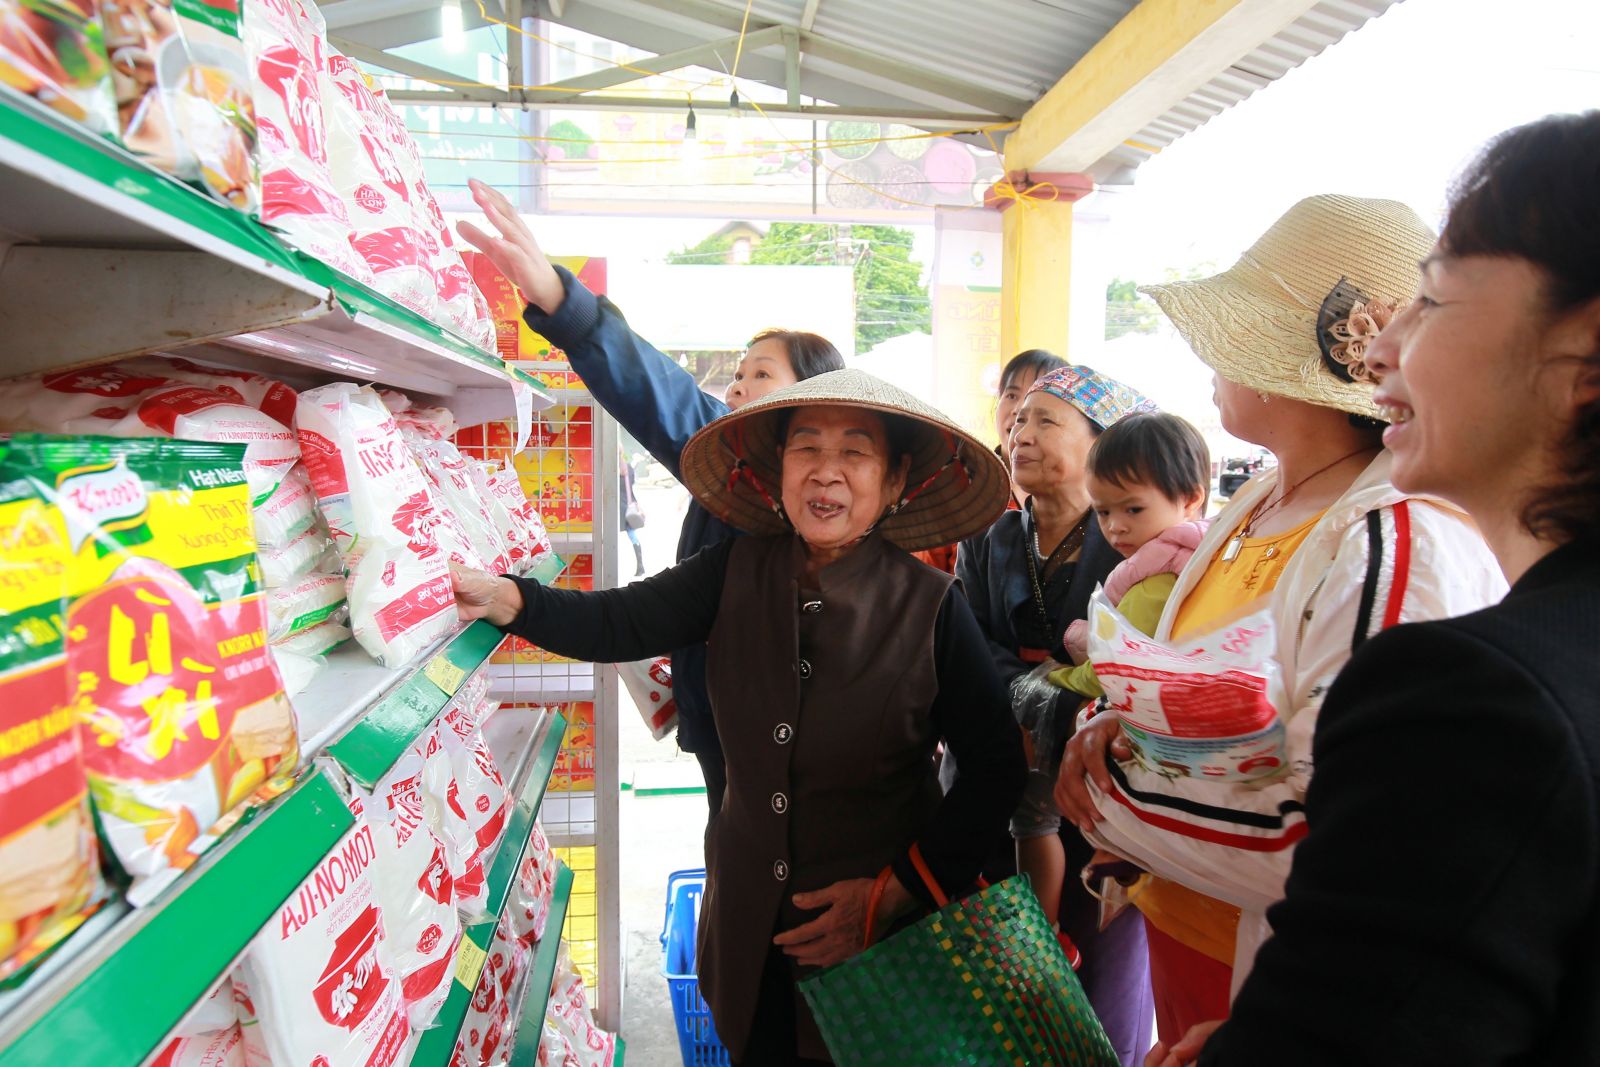 Hapro tổ chức điểm bán hàng theo mô hình 'chợ Tết' tại huyện Ứng Hòa nhân dịp Tết Nguyên đán Canh Tý 2020